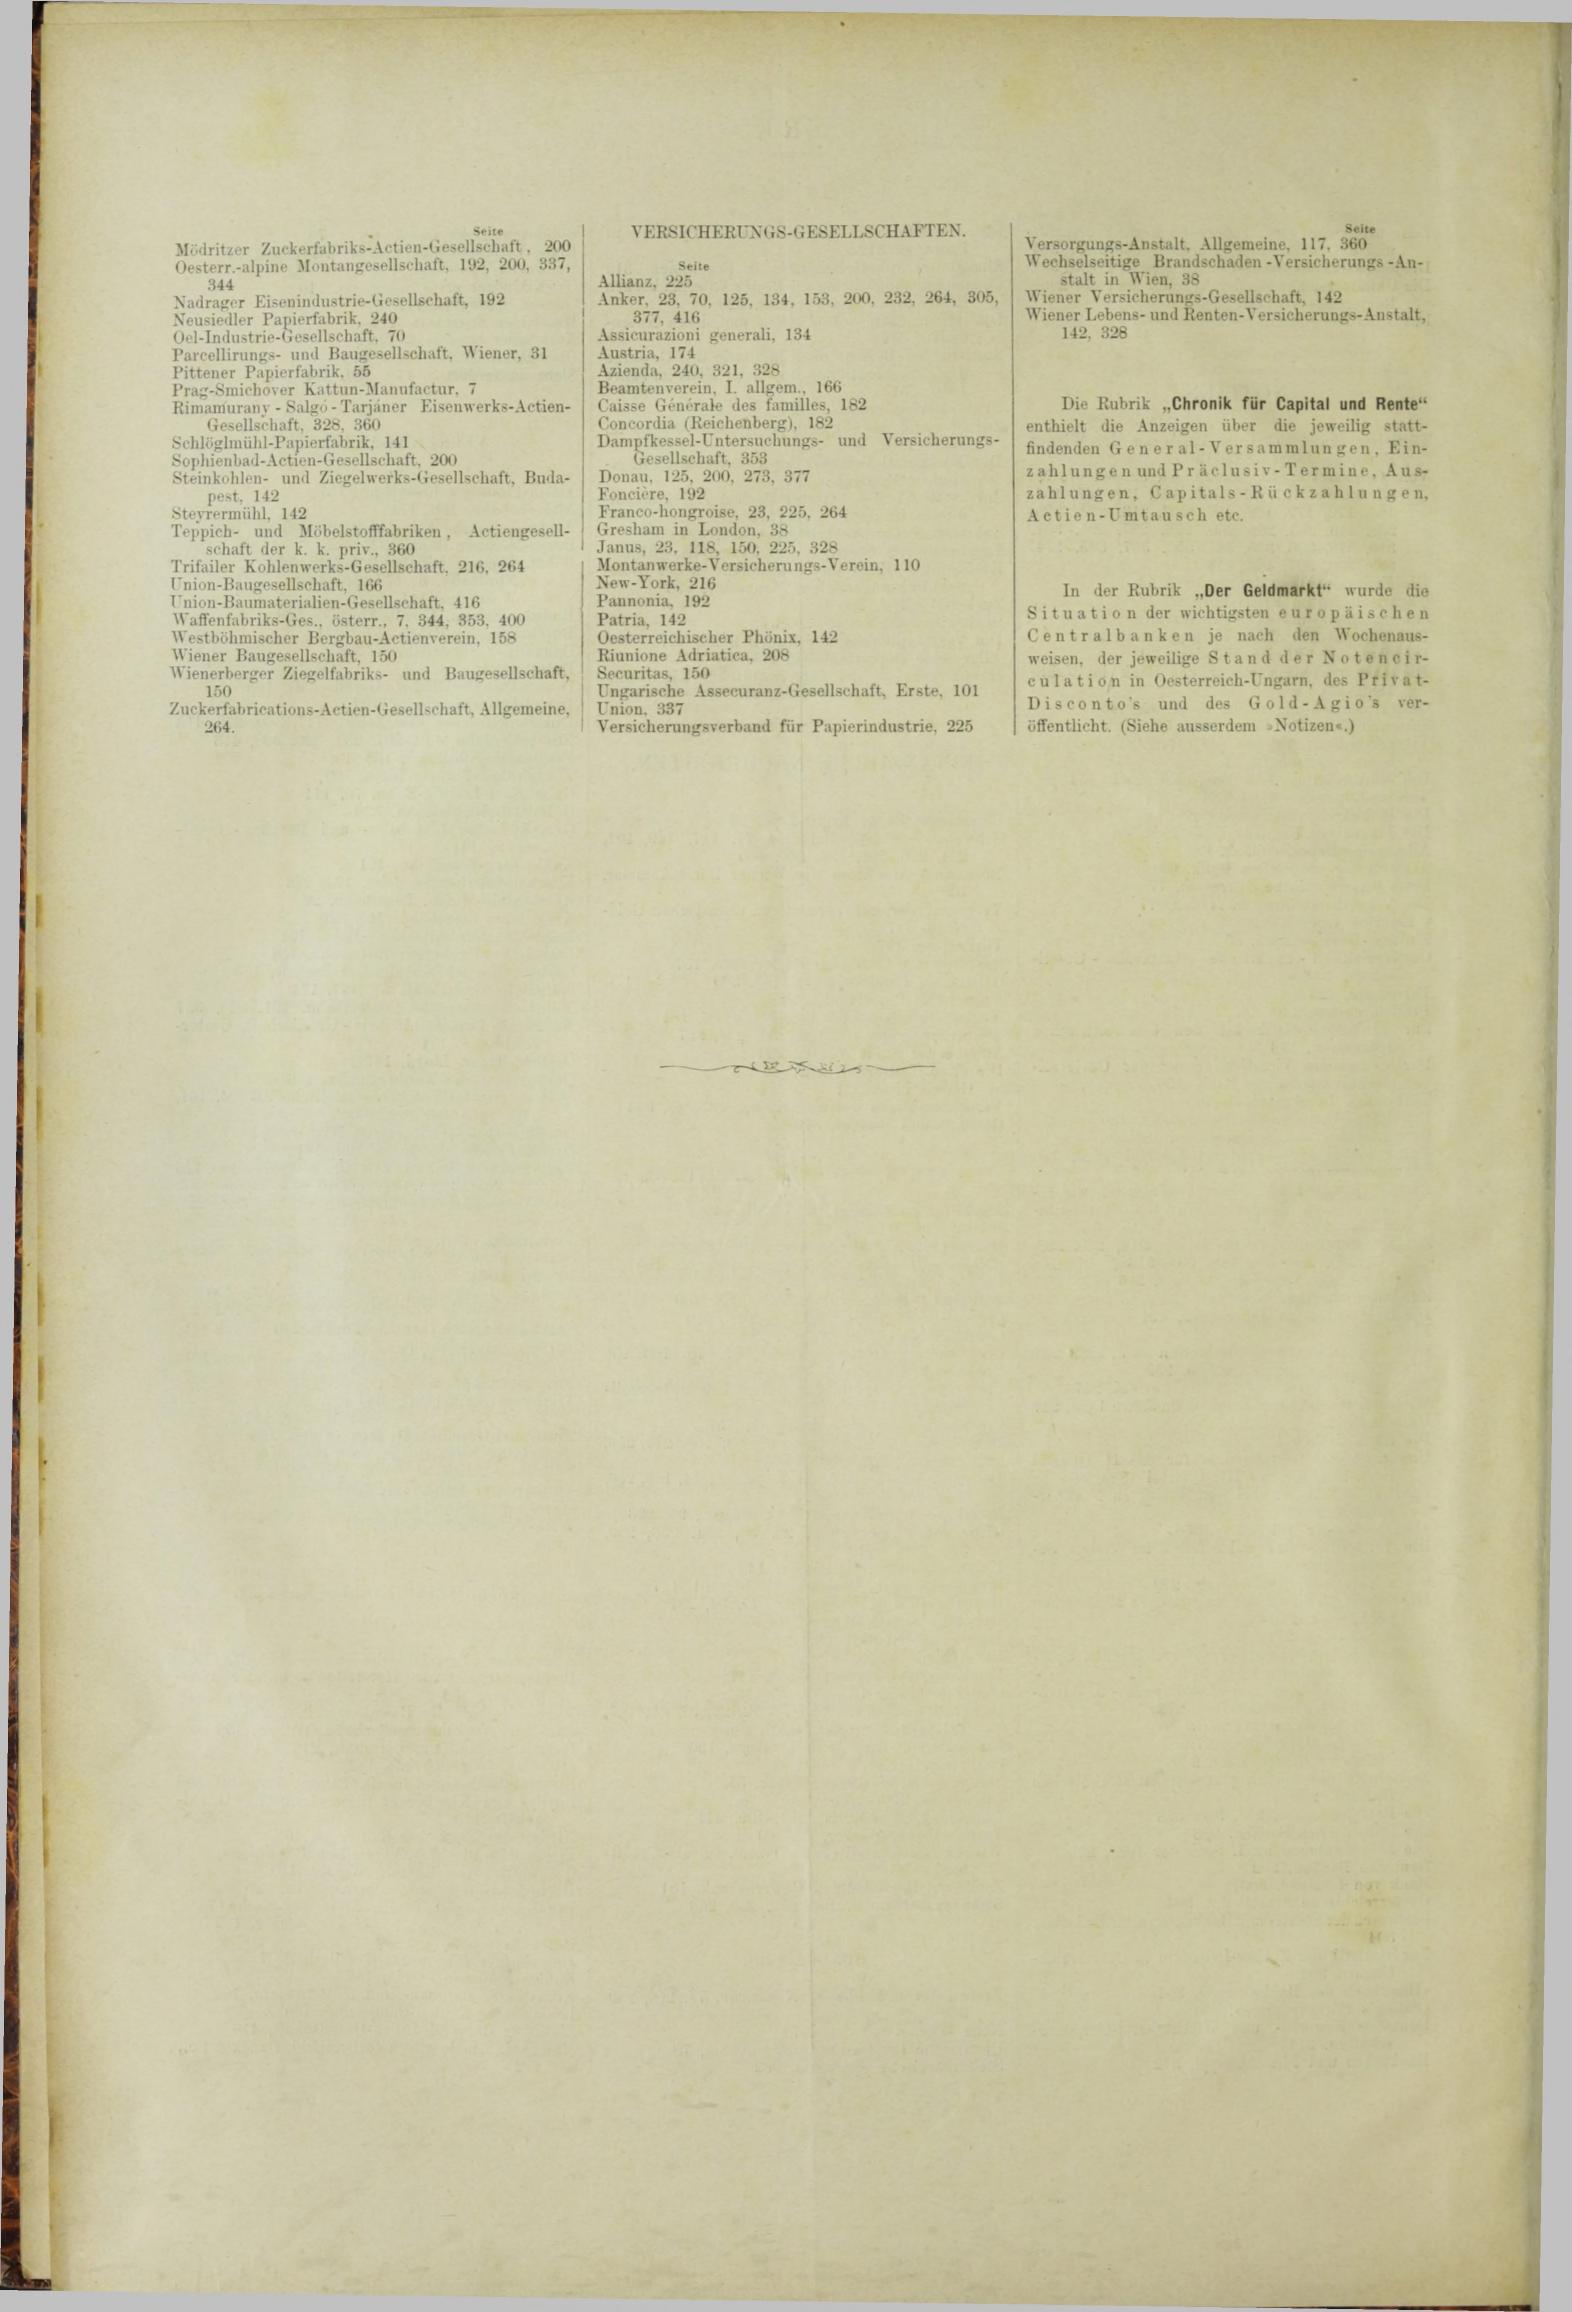 Der Tresor 05.04.1883 - Seite 12